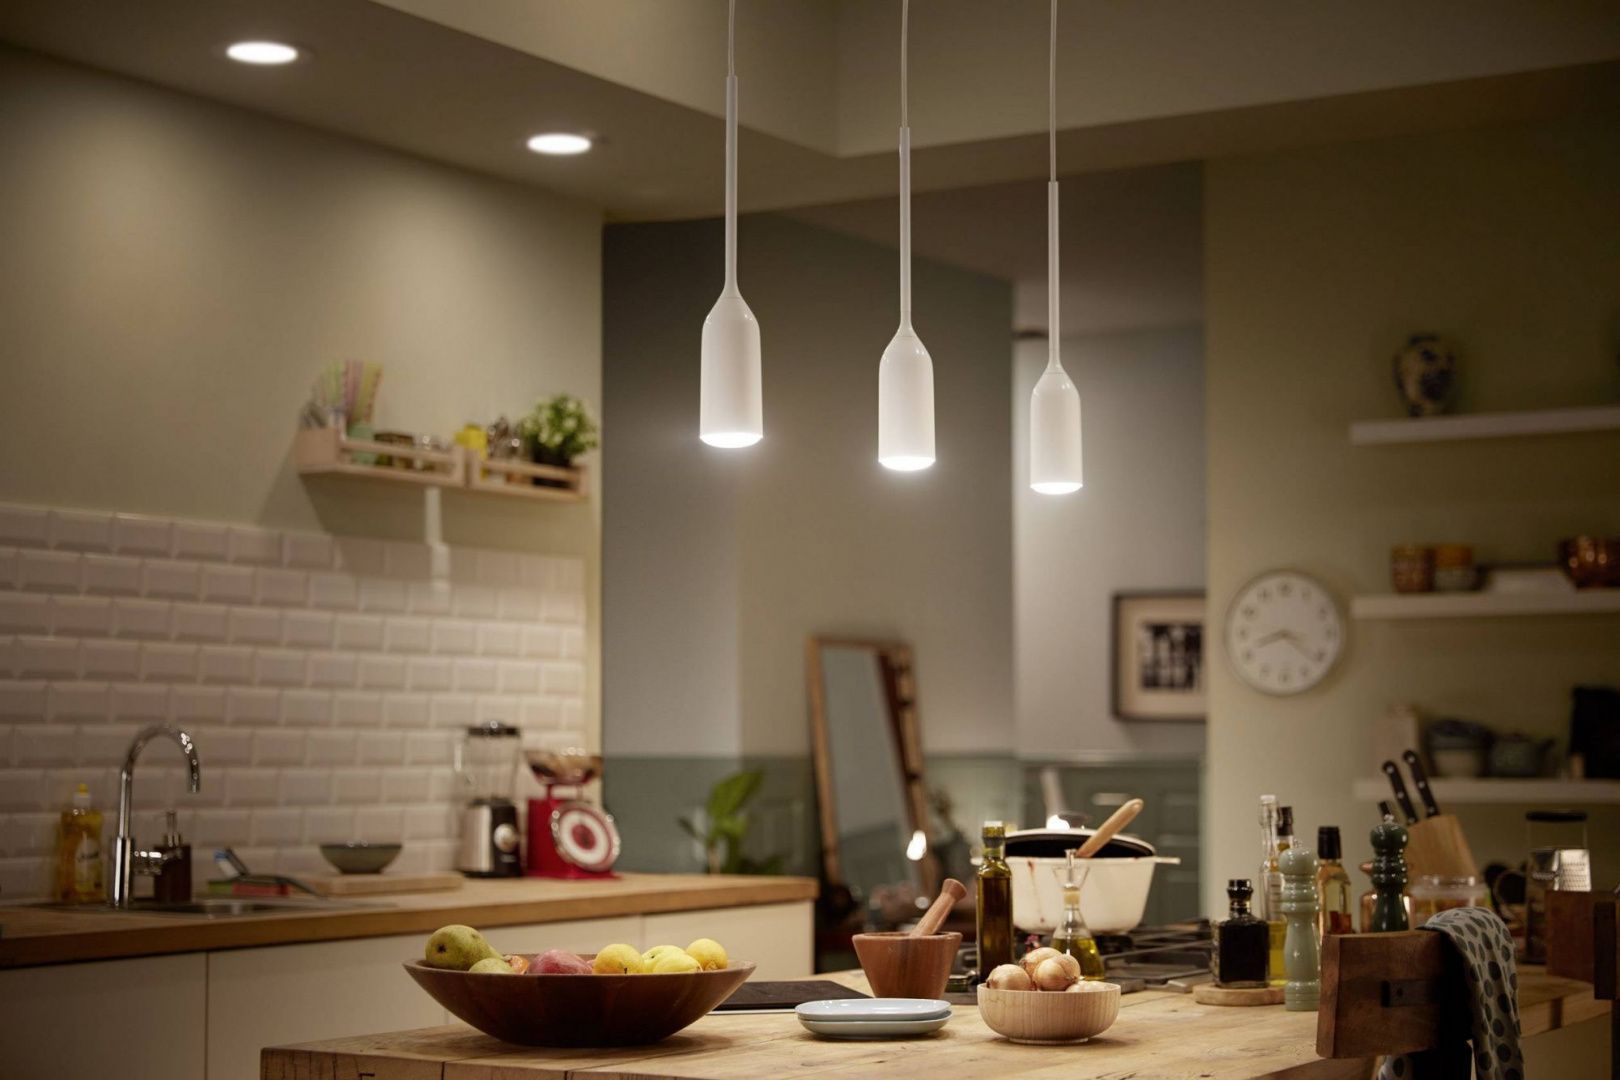 светильники над столешницей в кухне